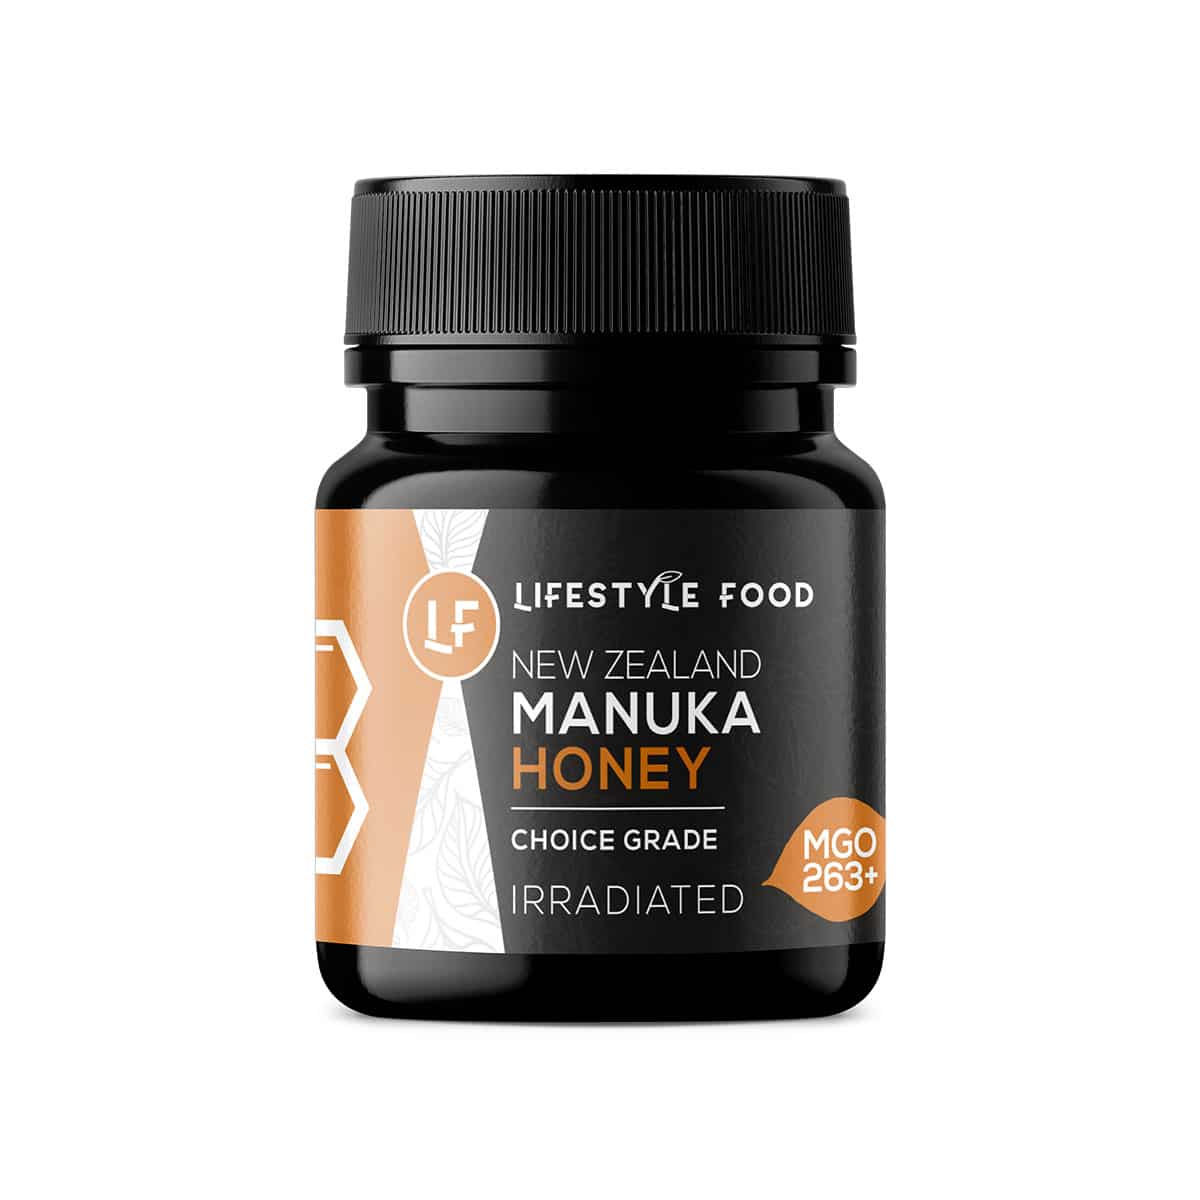 Lifestyle Food Manuka Honey MGO 263+ Choice Grade - 250g